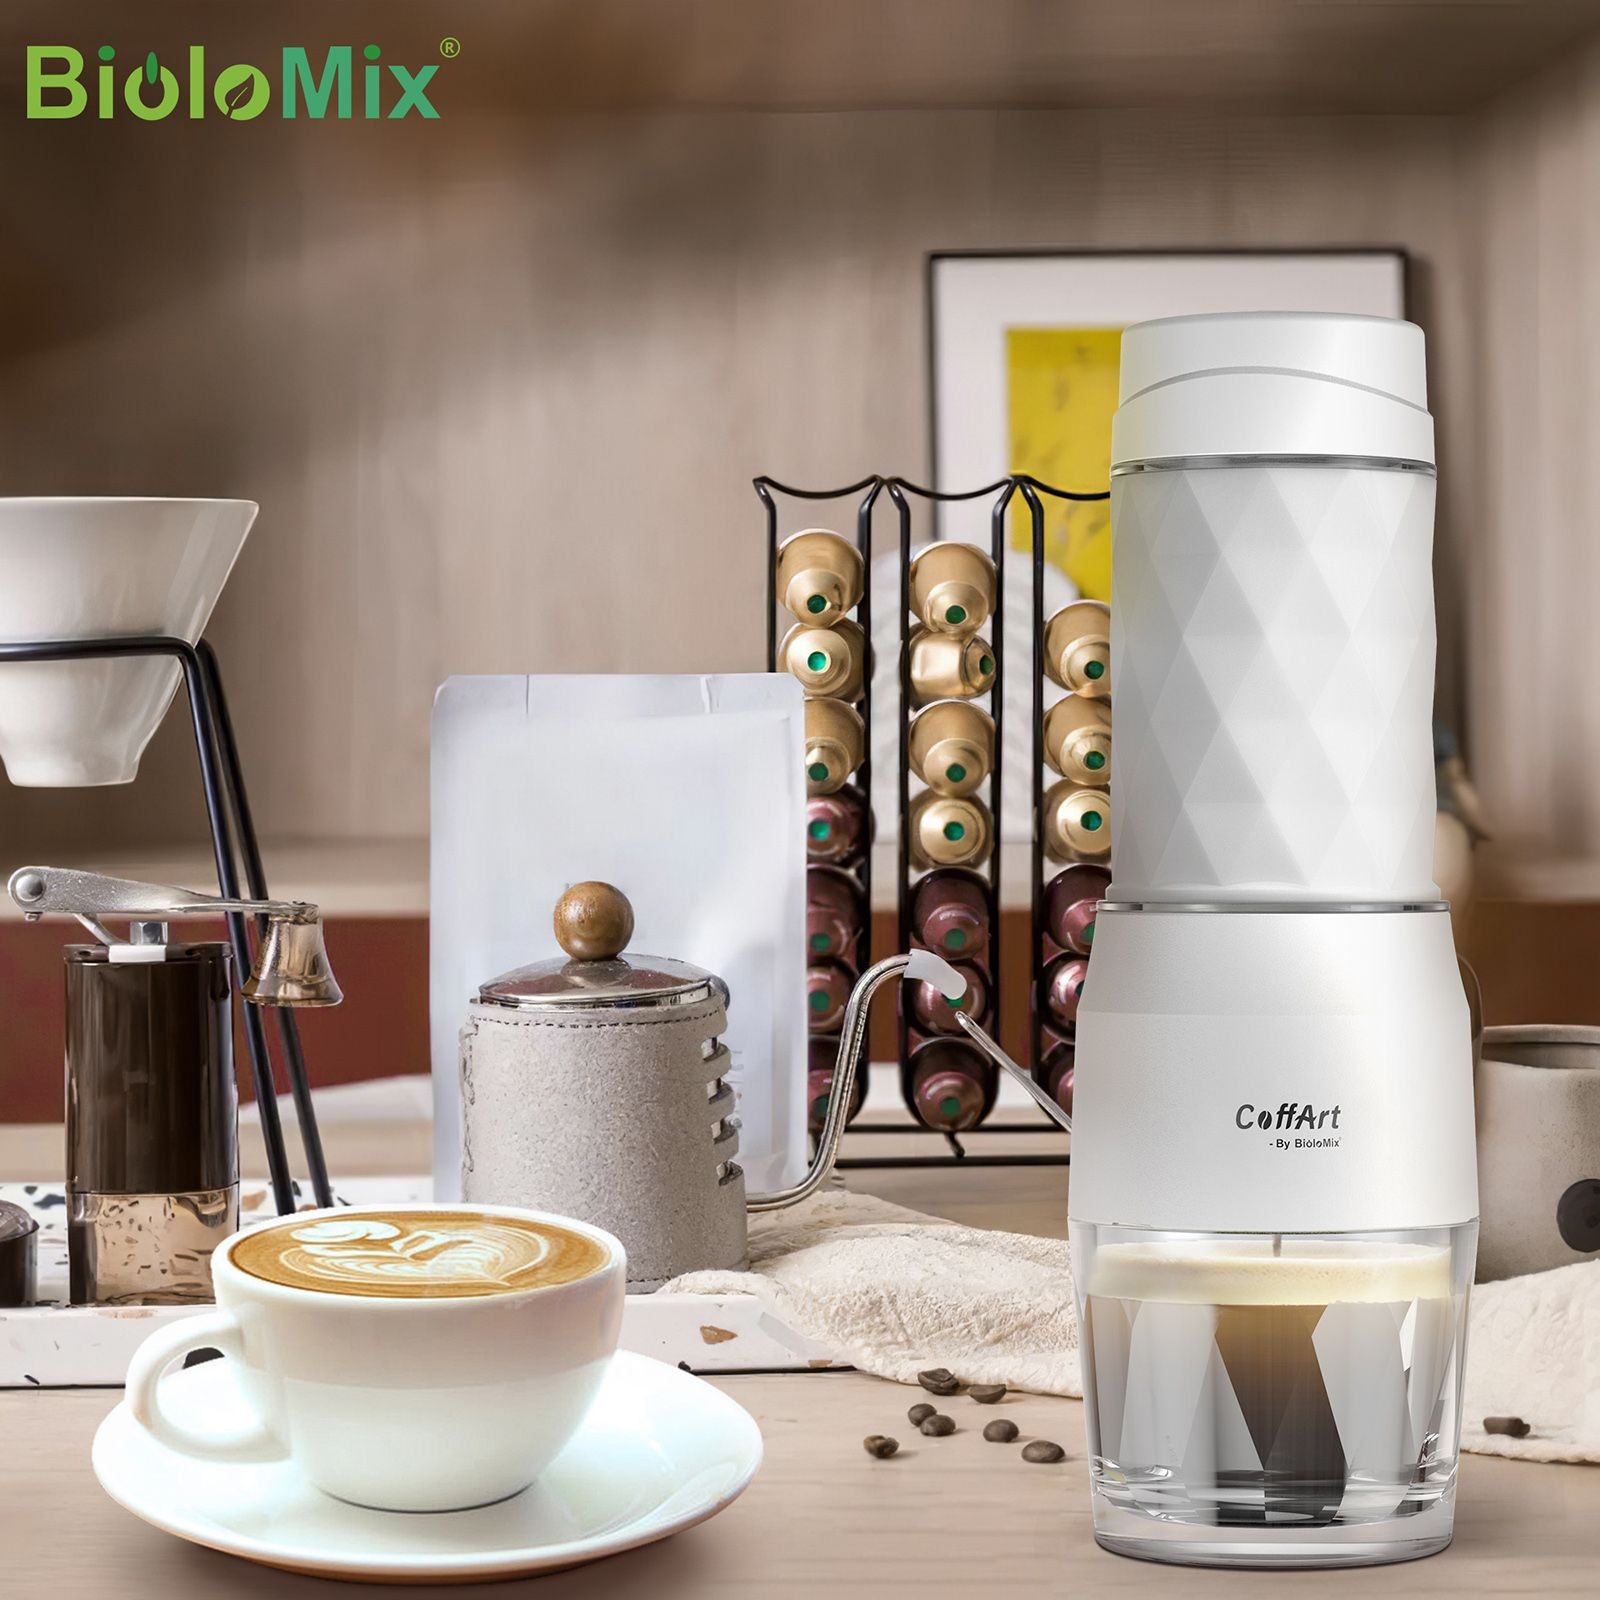 Tragbare Kaffeemaschine Weiß BioloMix HS8439